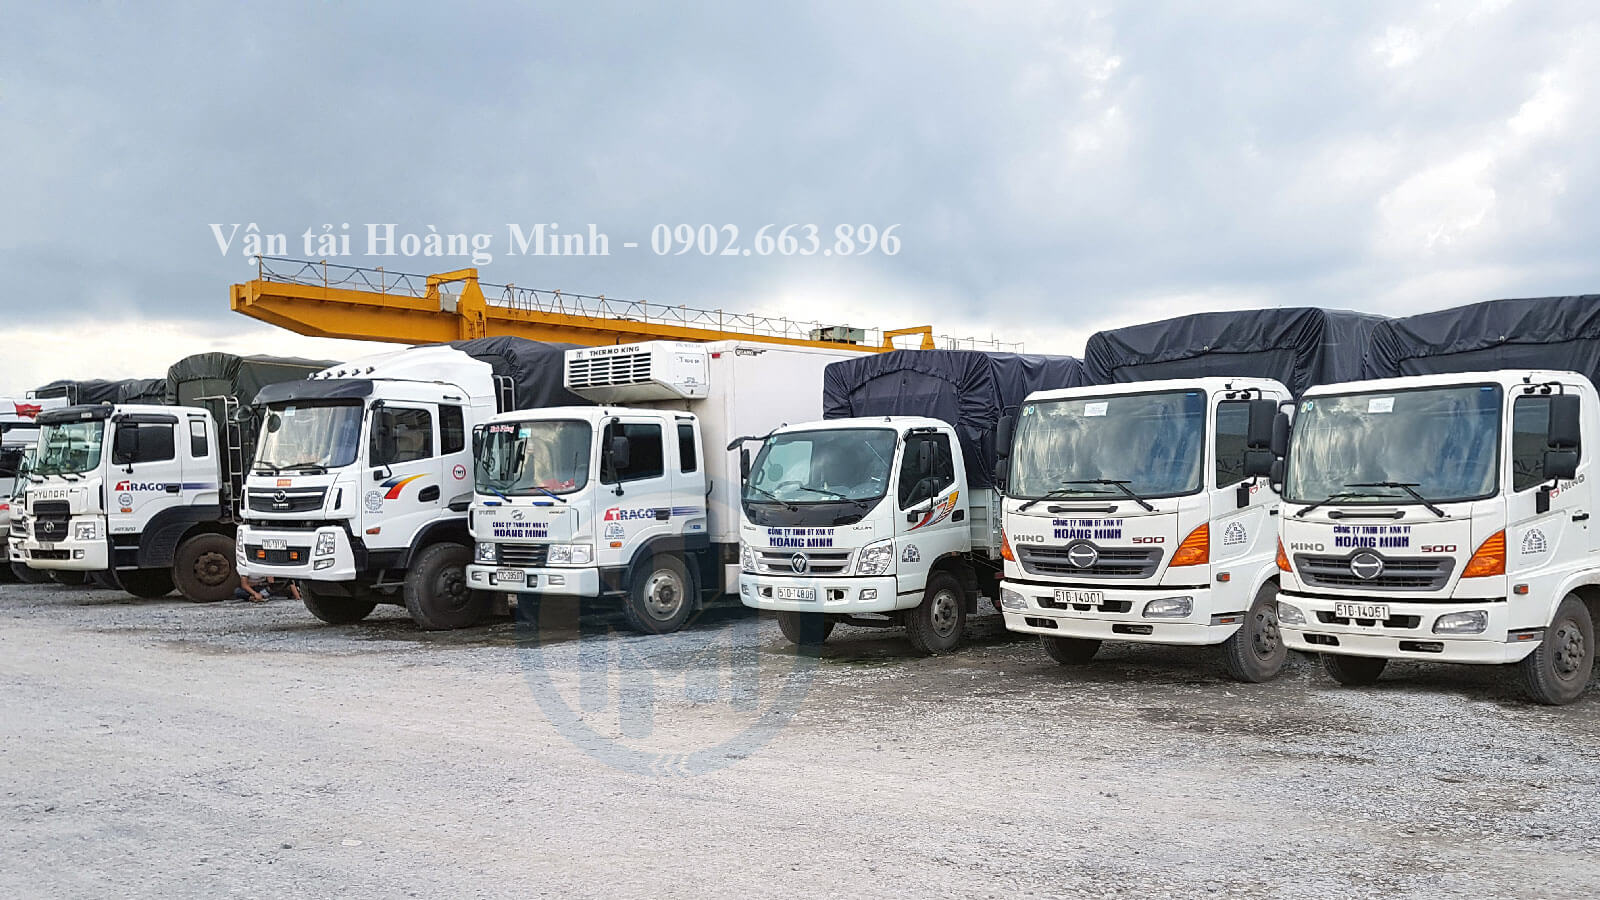 Cho thuê xe tải Thủ Thừa từ 2 đến 32 tấn chở hàng đi nơi khác.jpg